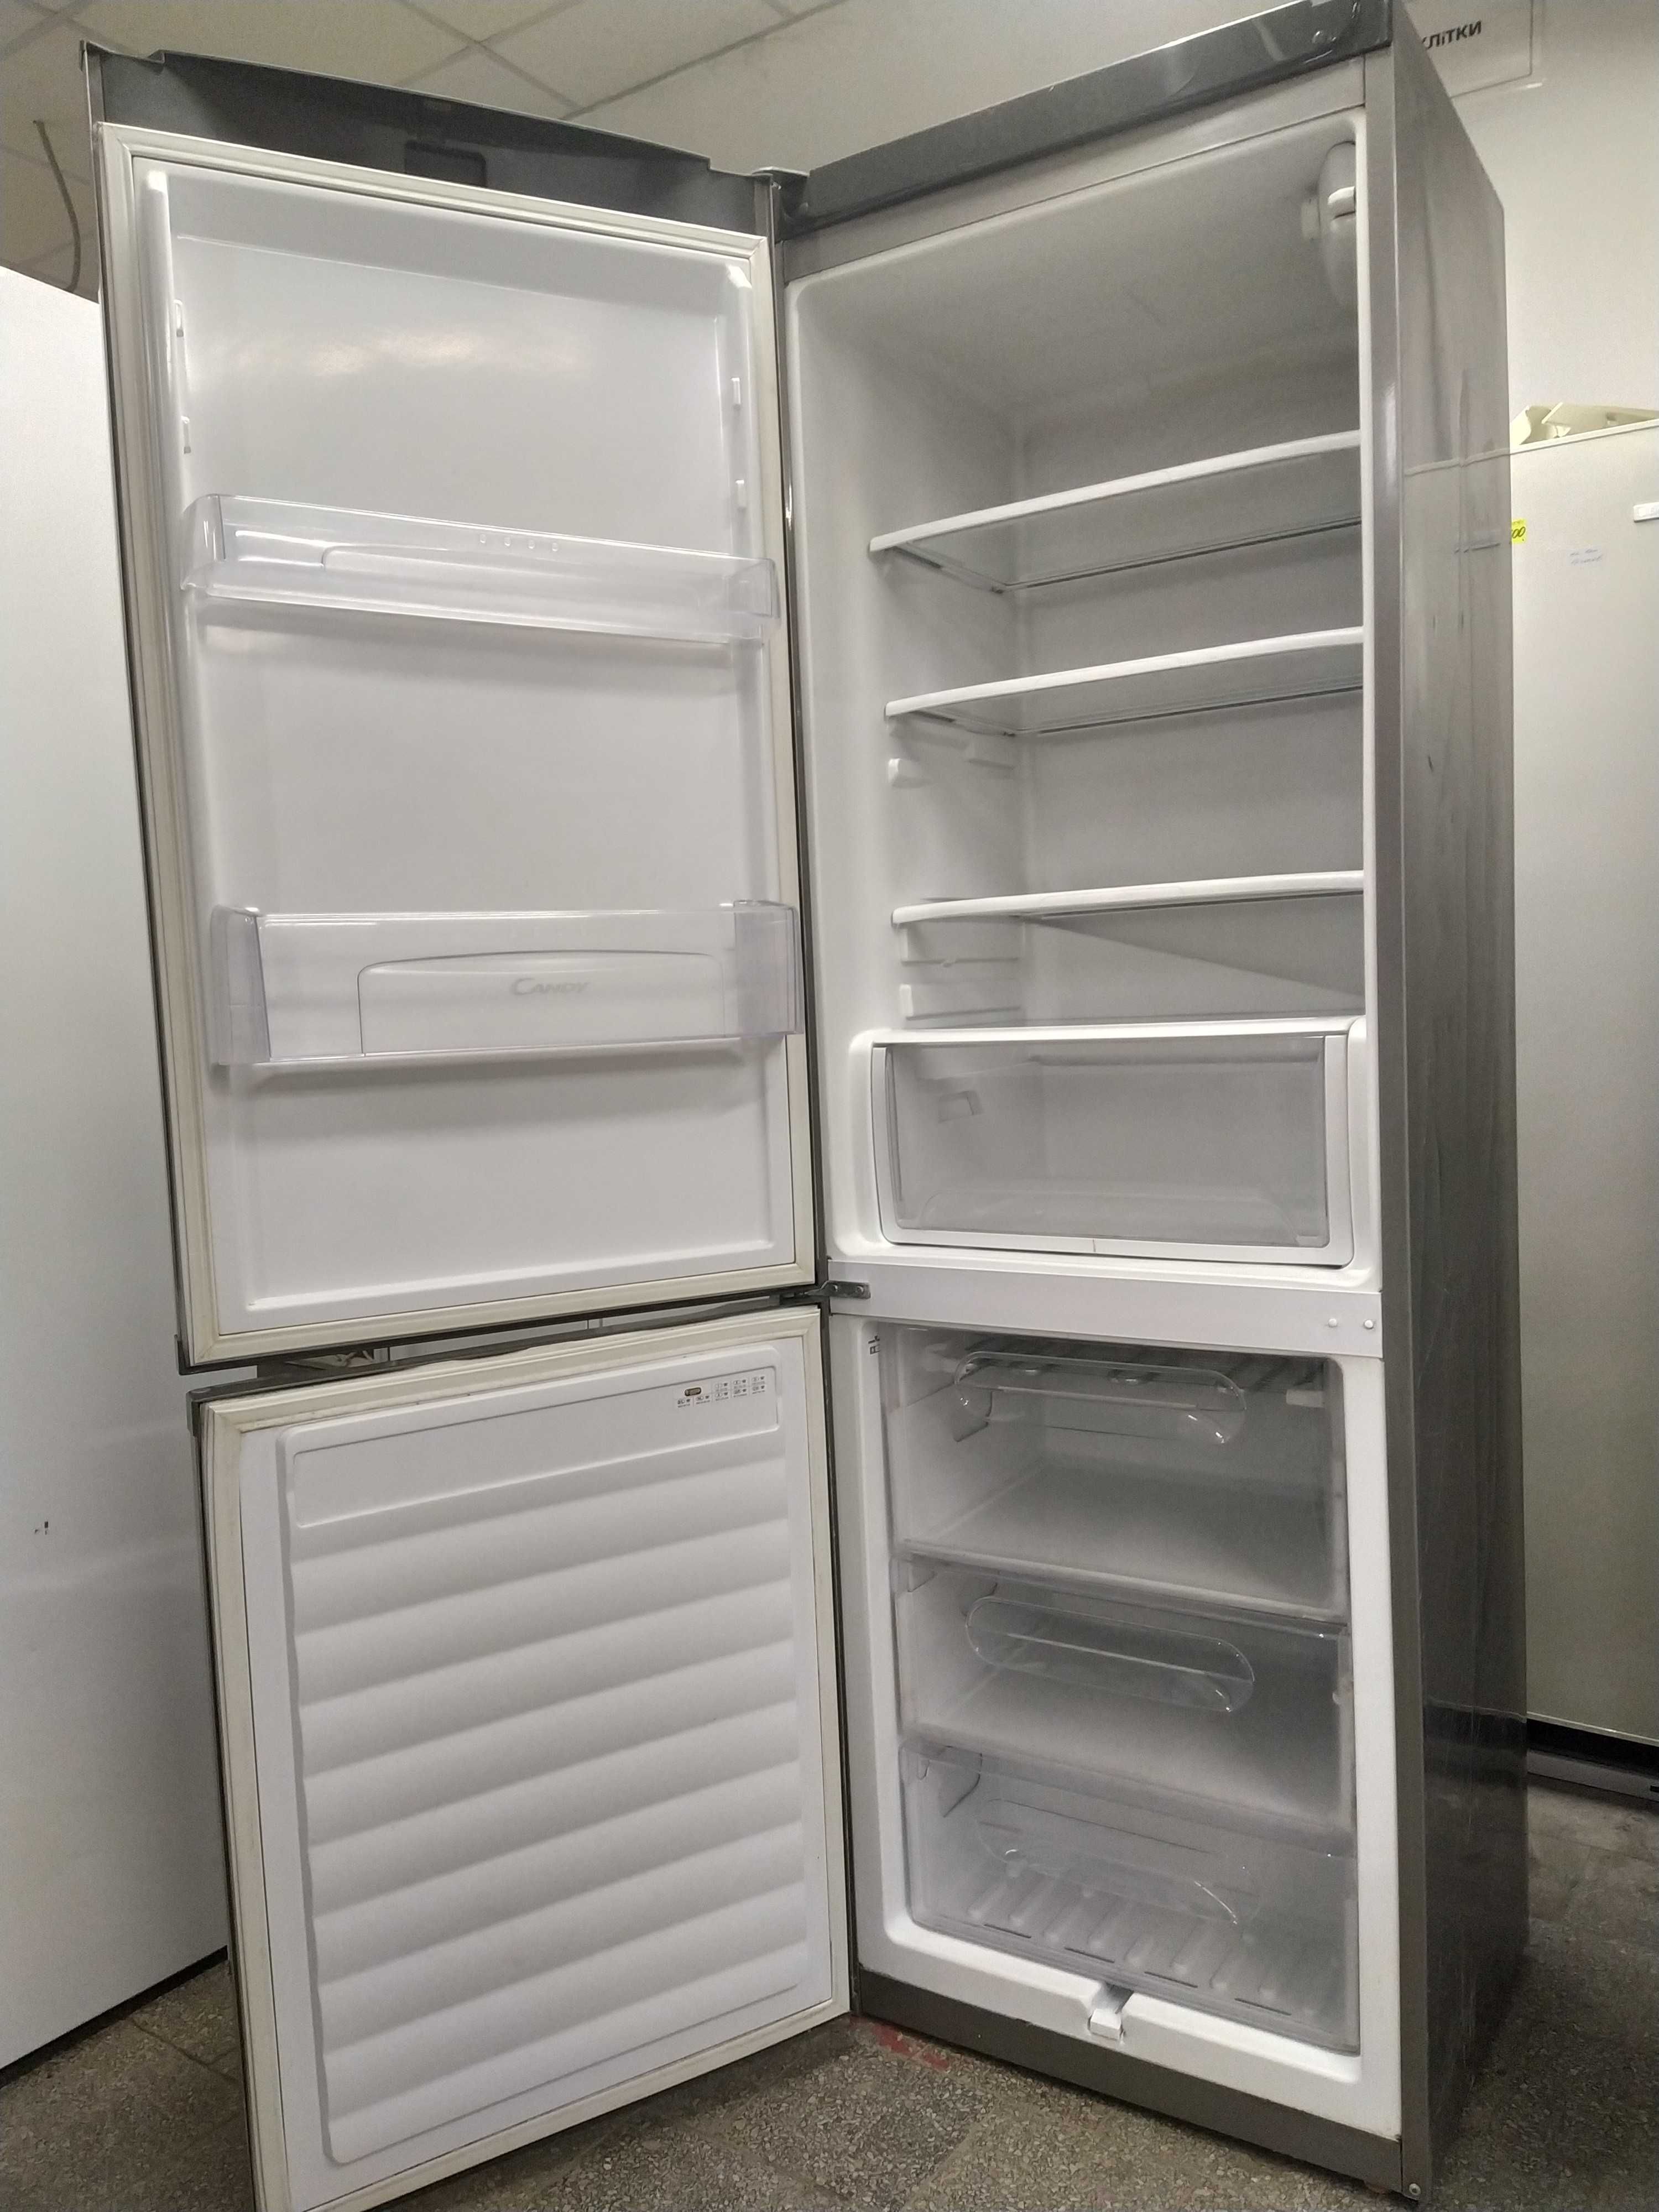 Холодильник б/у Candy CFMEE 3755 (111019). Привезен из Европы